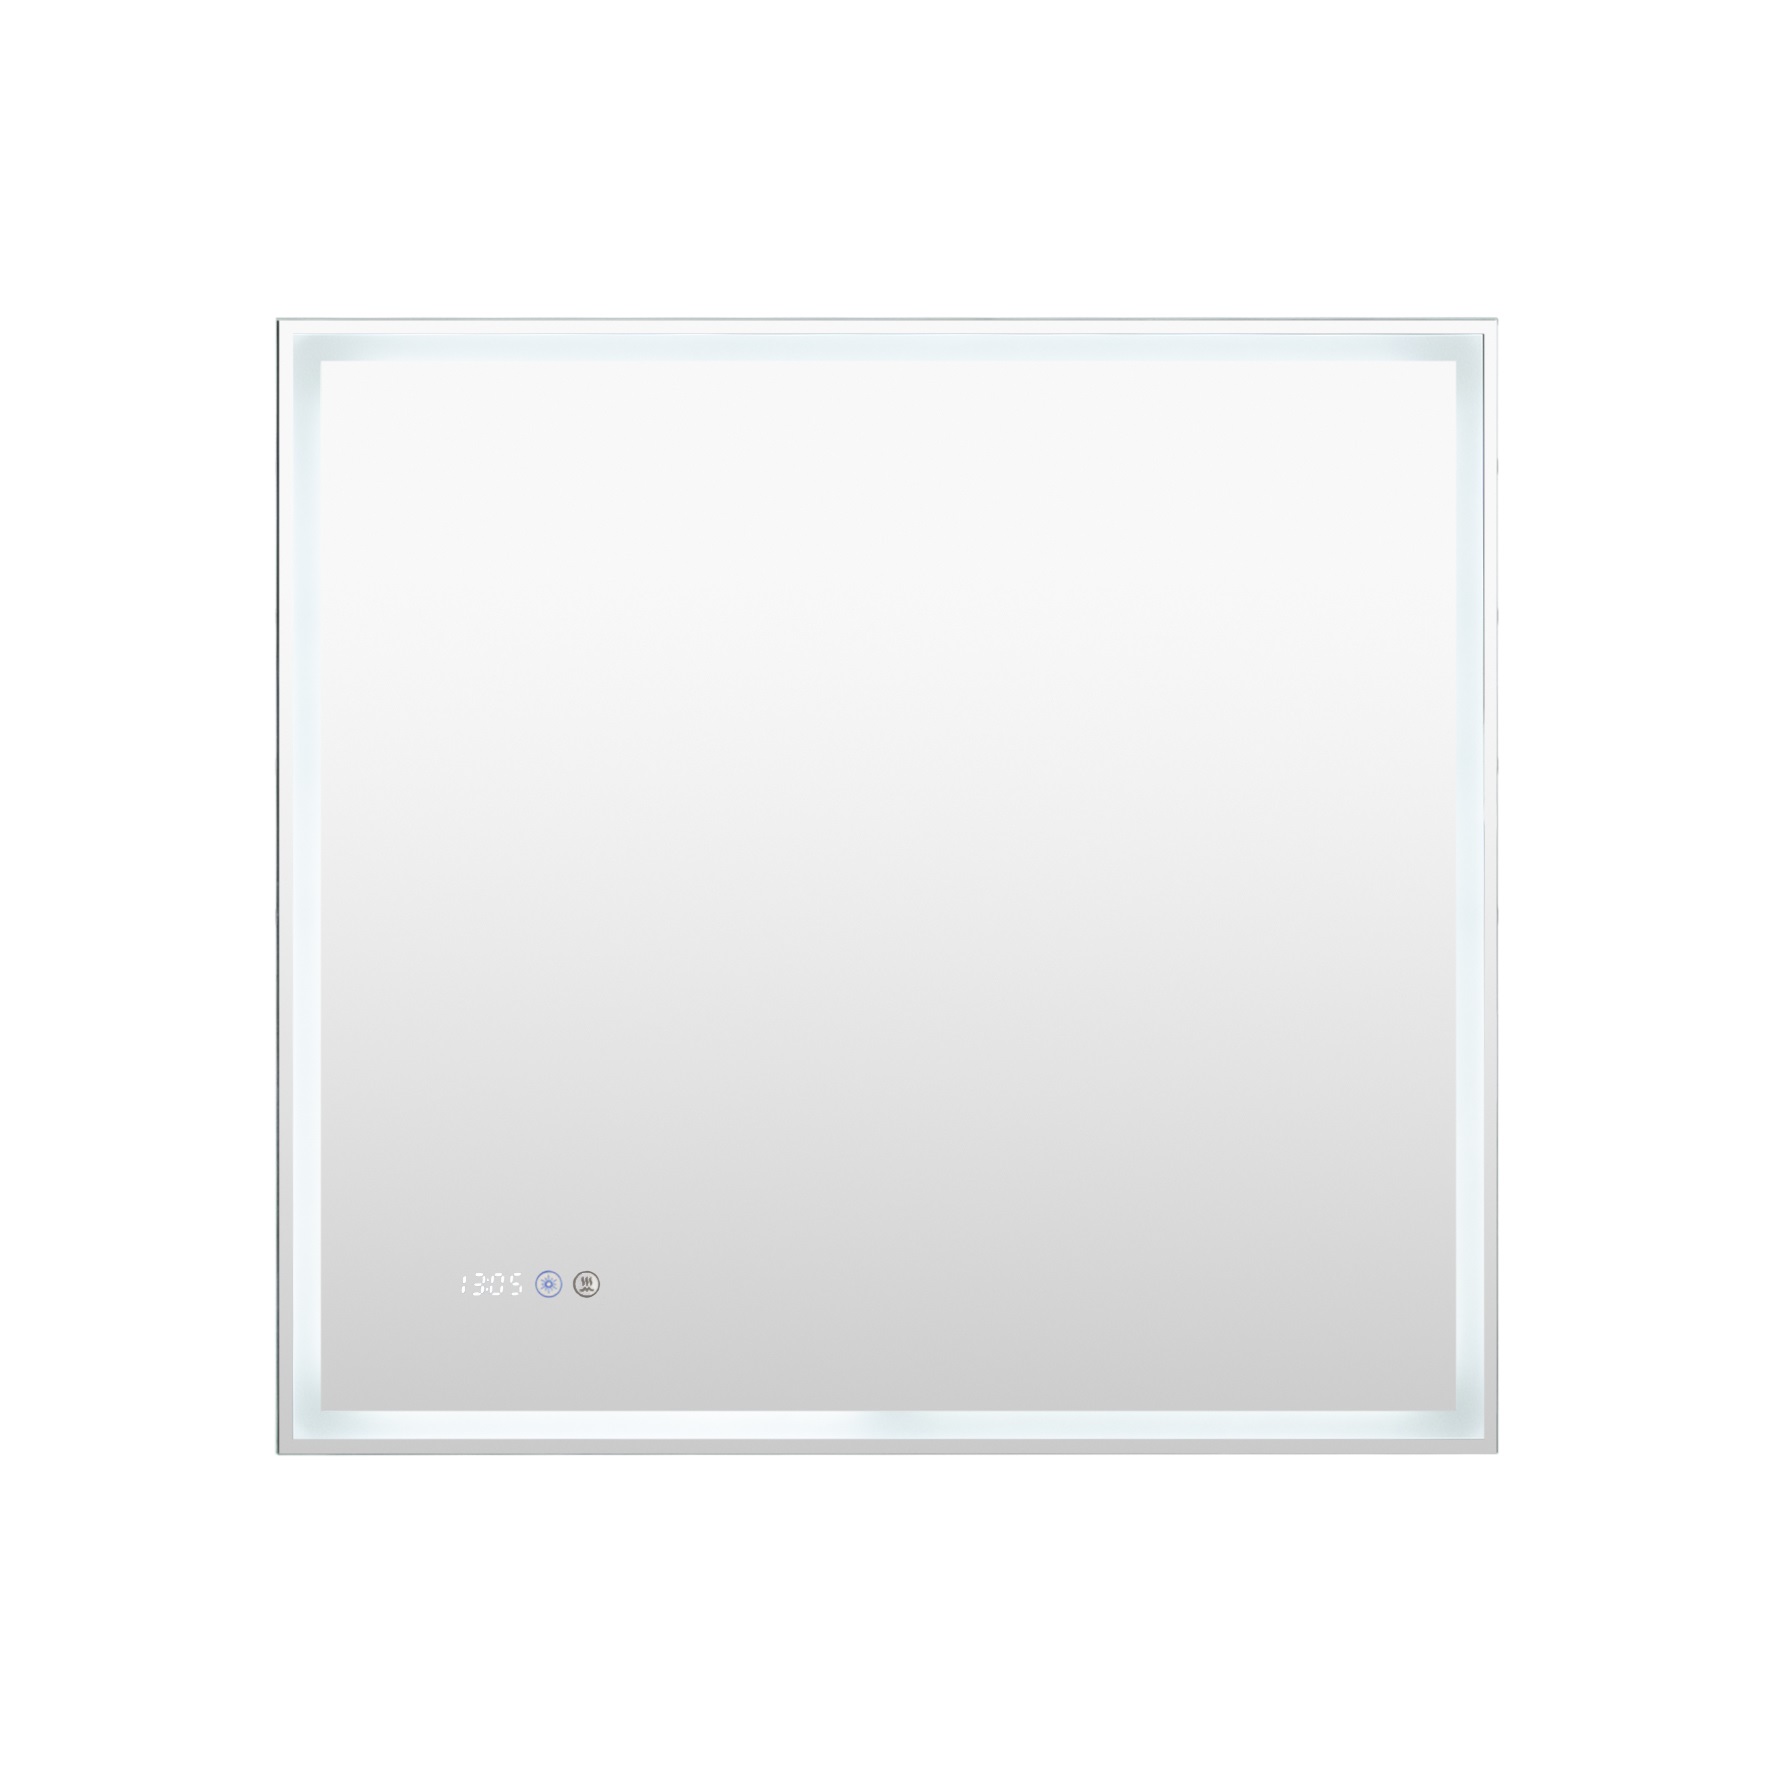 Зеркало Aquanet Оптима 80 белый матовый